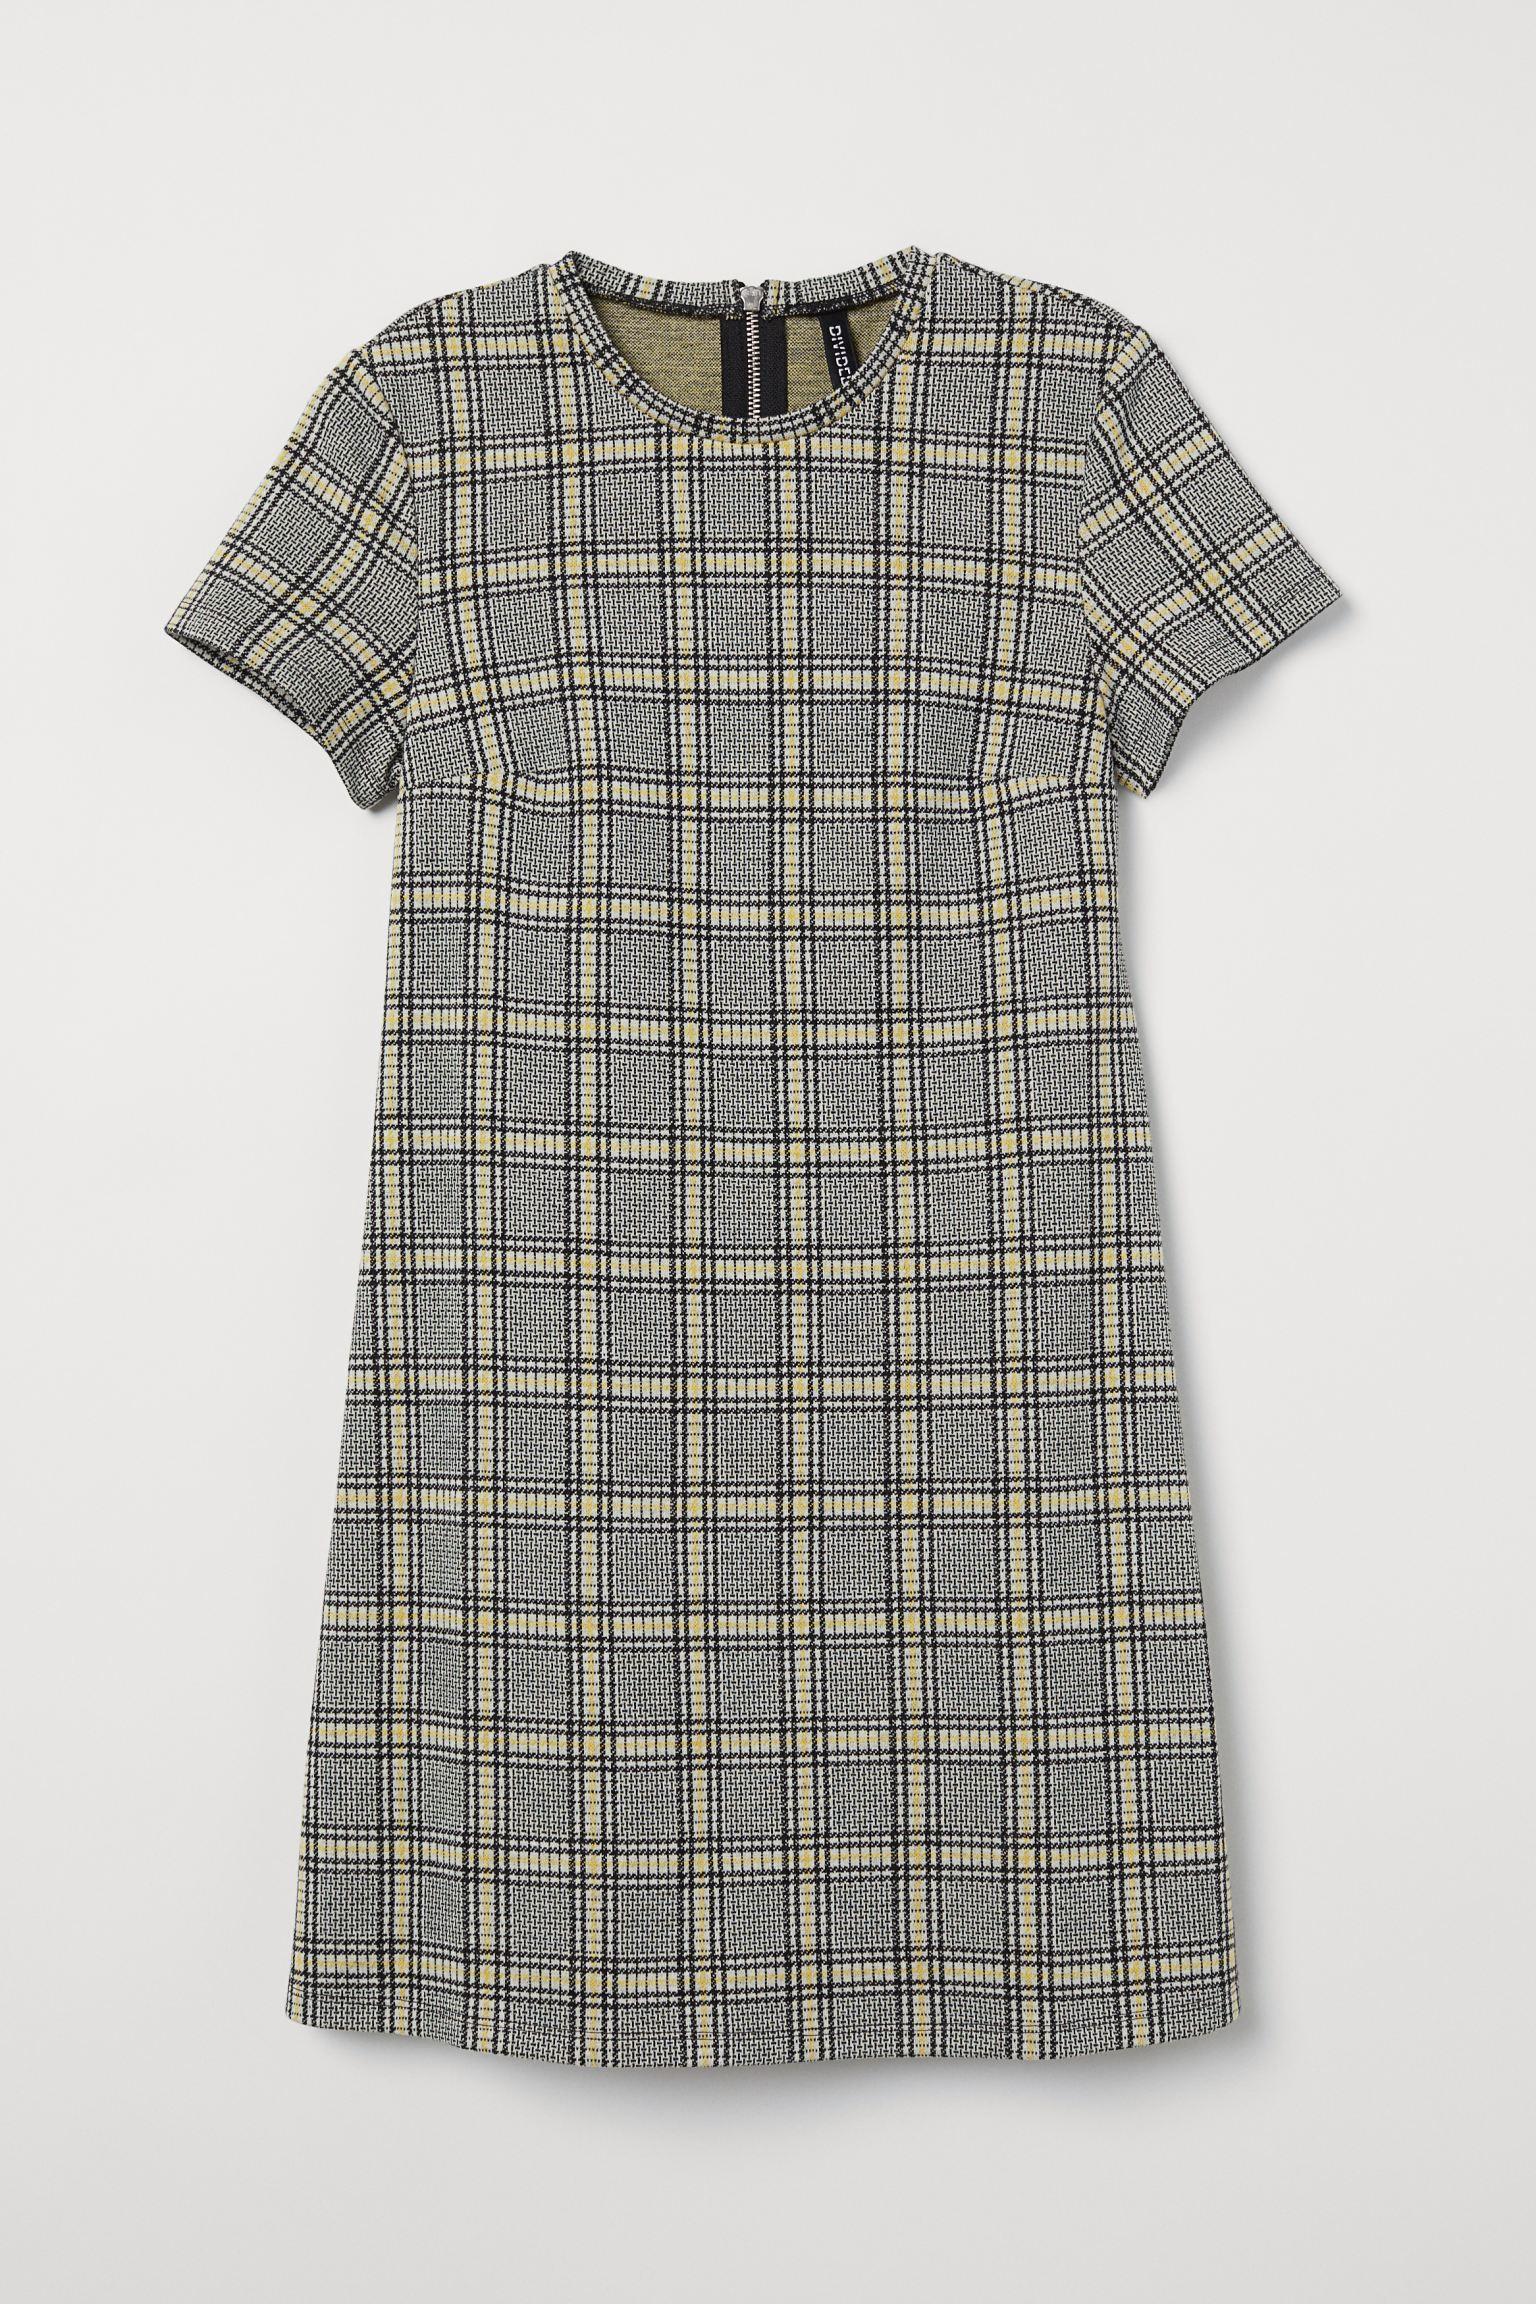 Отзыв на Короткое платье трикотажное из Интернет-Магазина H&M